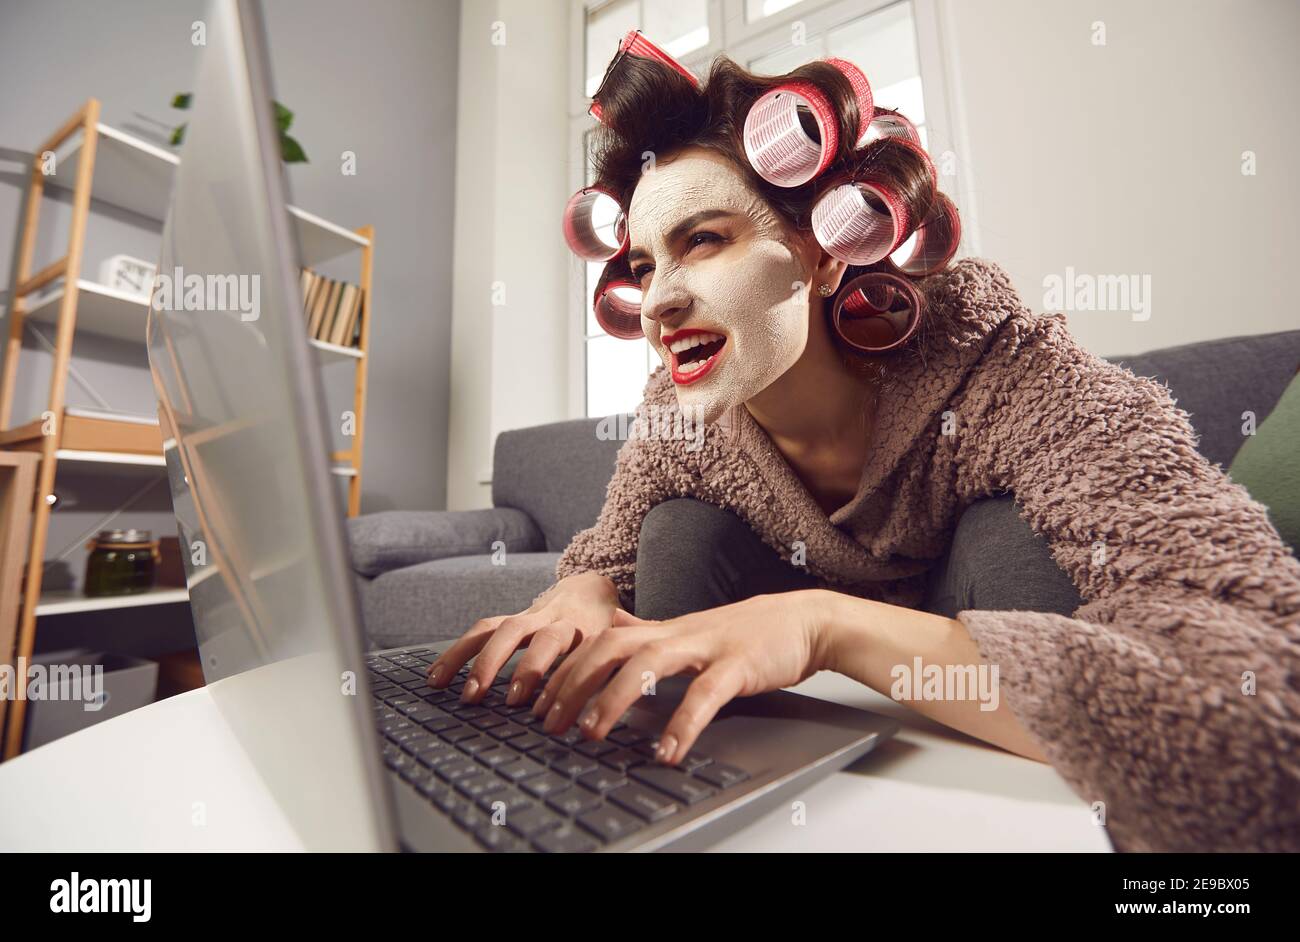 Mujer loca sentada en el ordenador portátil y dejando comentarios insultantes medios sociales de la gente Foto de stock